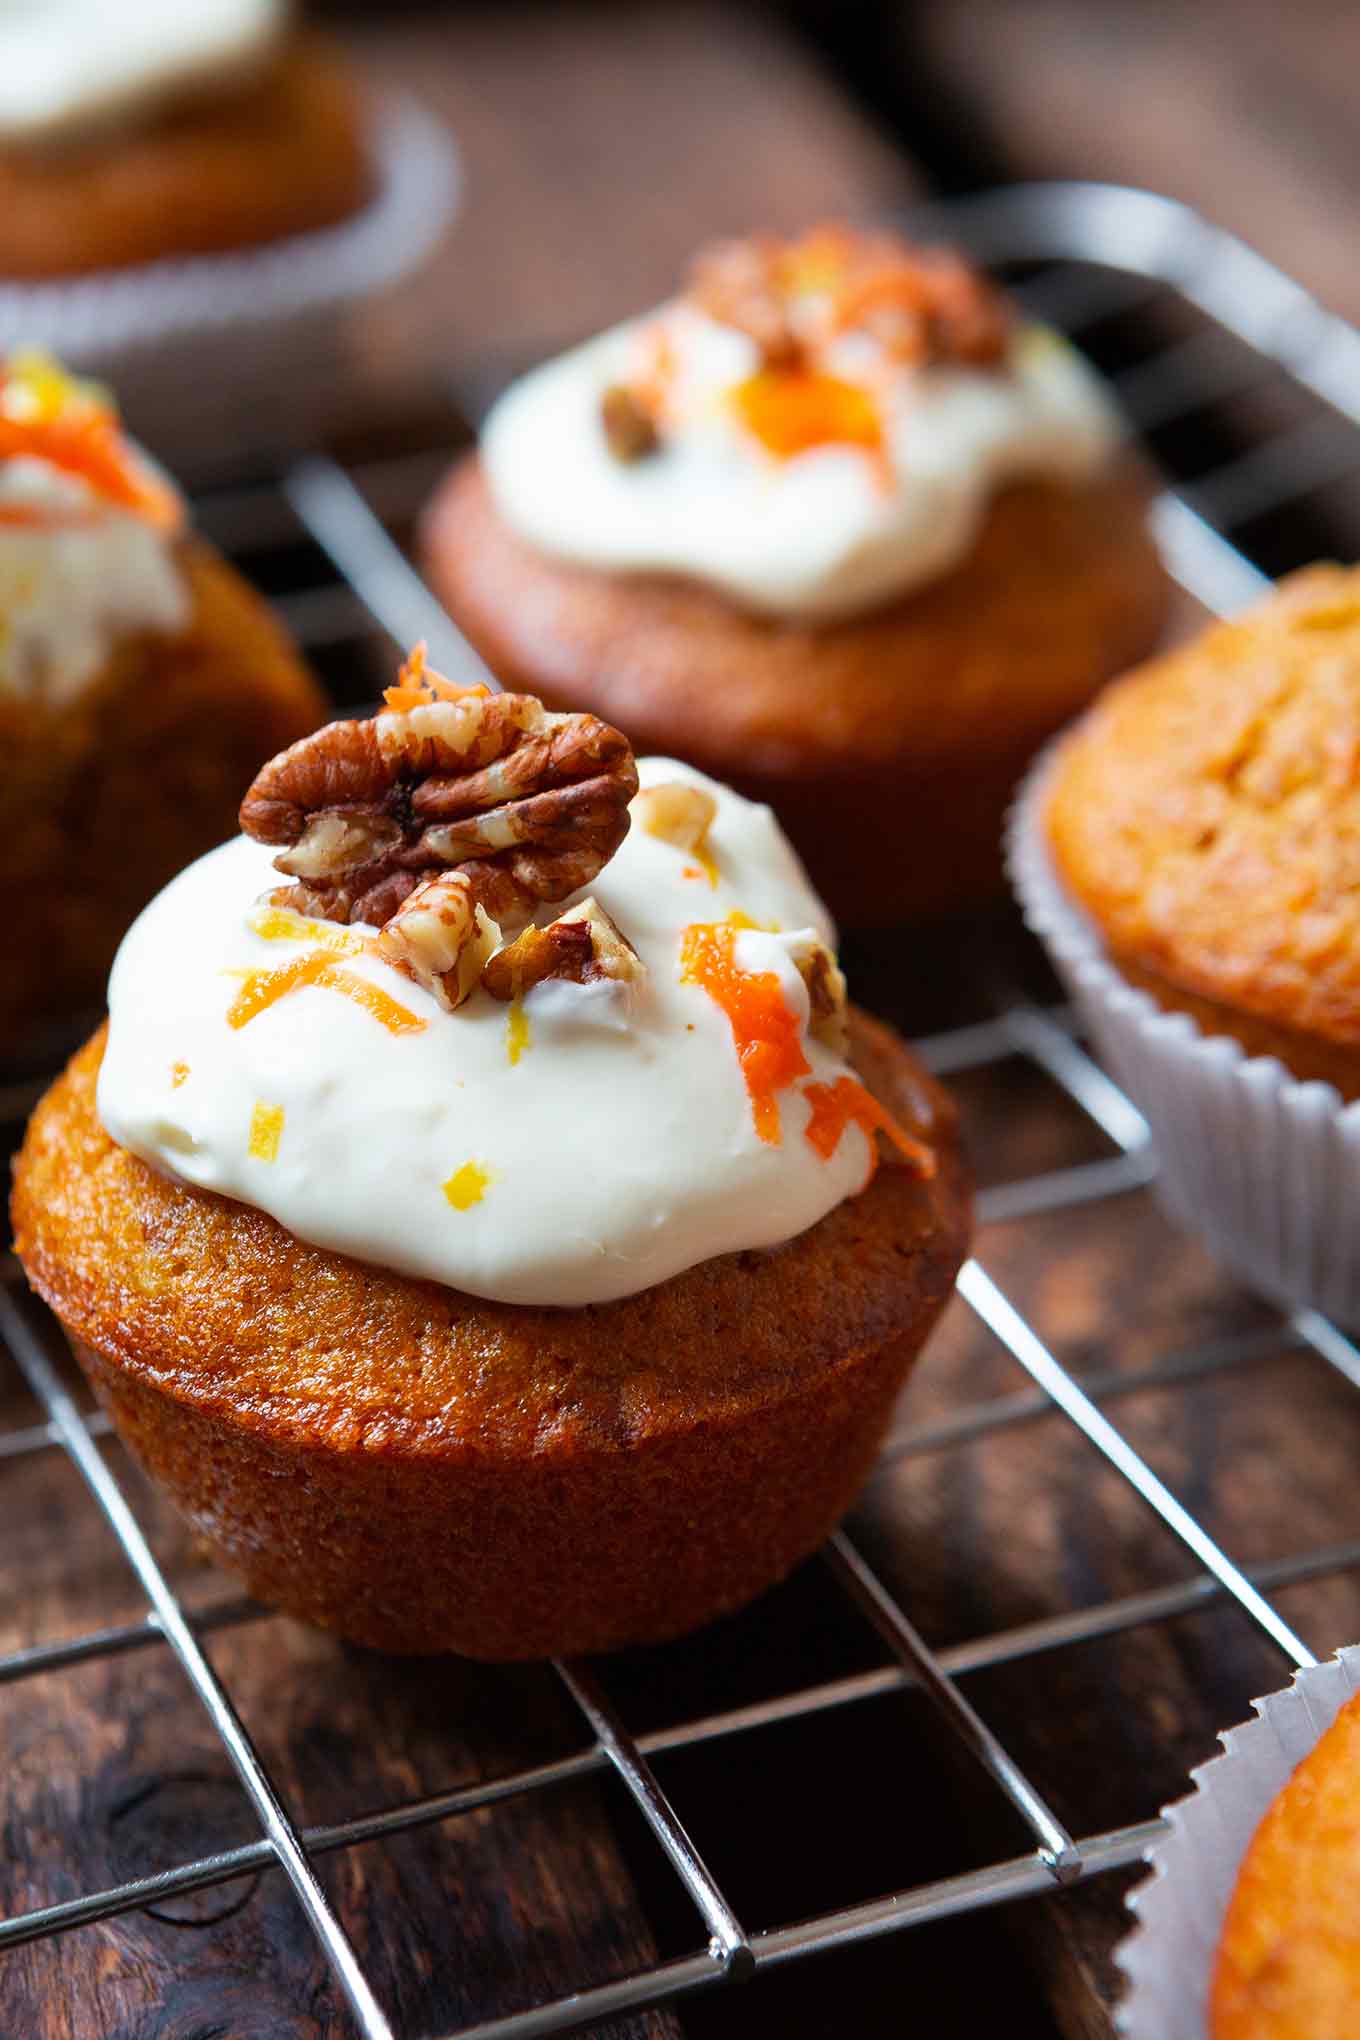 Werbung. Carrot Cake Muffins. Diese einfachen Karotten Muffins mit Creme Fraiche Topping sind saftig und das perfekte Rezept für Kinder! Sooo gut! - Kochkarussell.com #rezept #muffins #einfach #carrotcake #kochkarussell